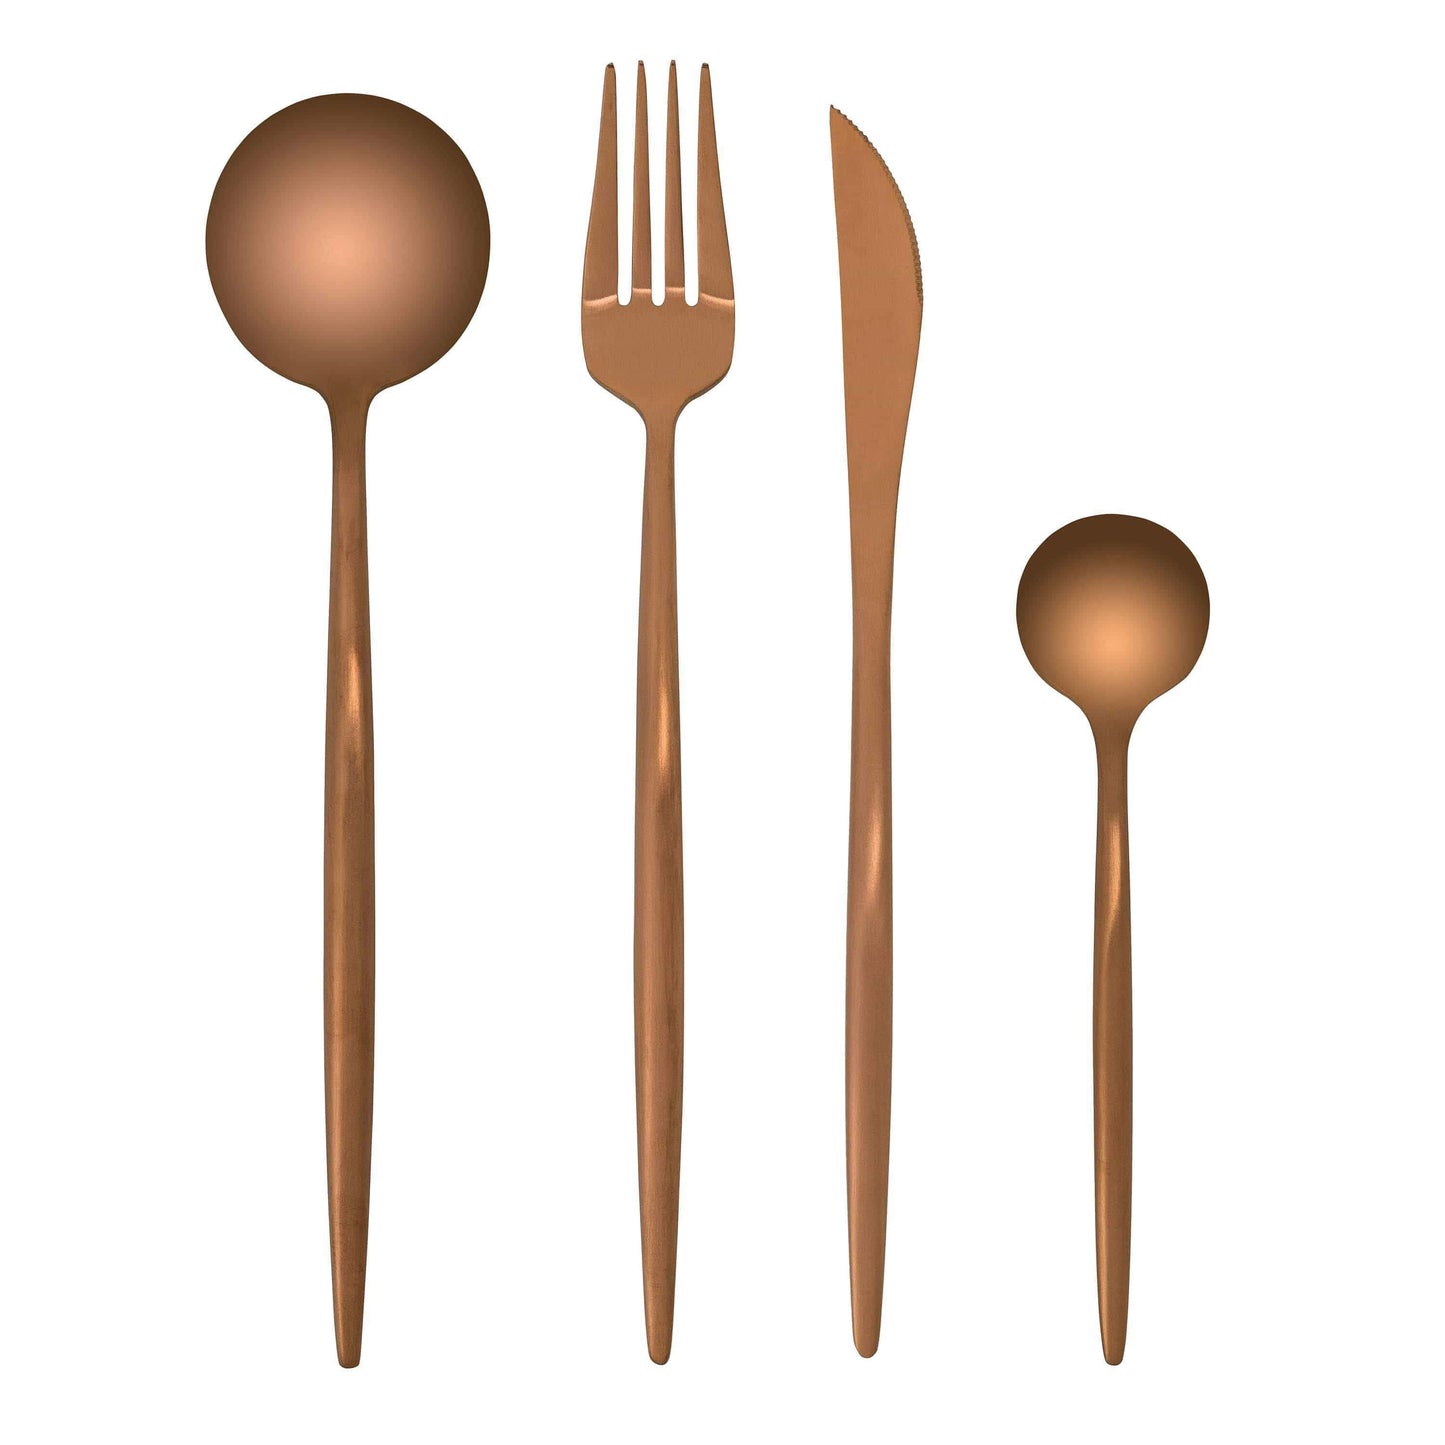 Spain Set - Nordic Side - __tab1:handle-care, best-selling, bis-hidden, cutlery, dining, utensils